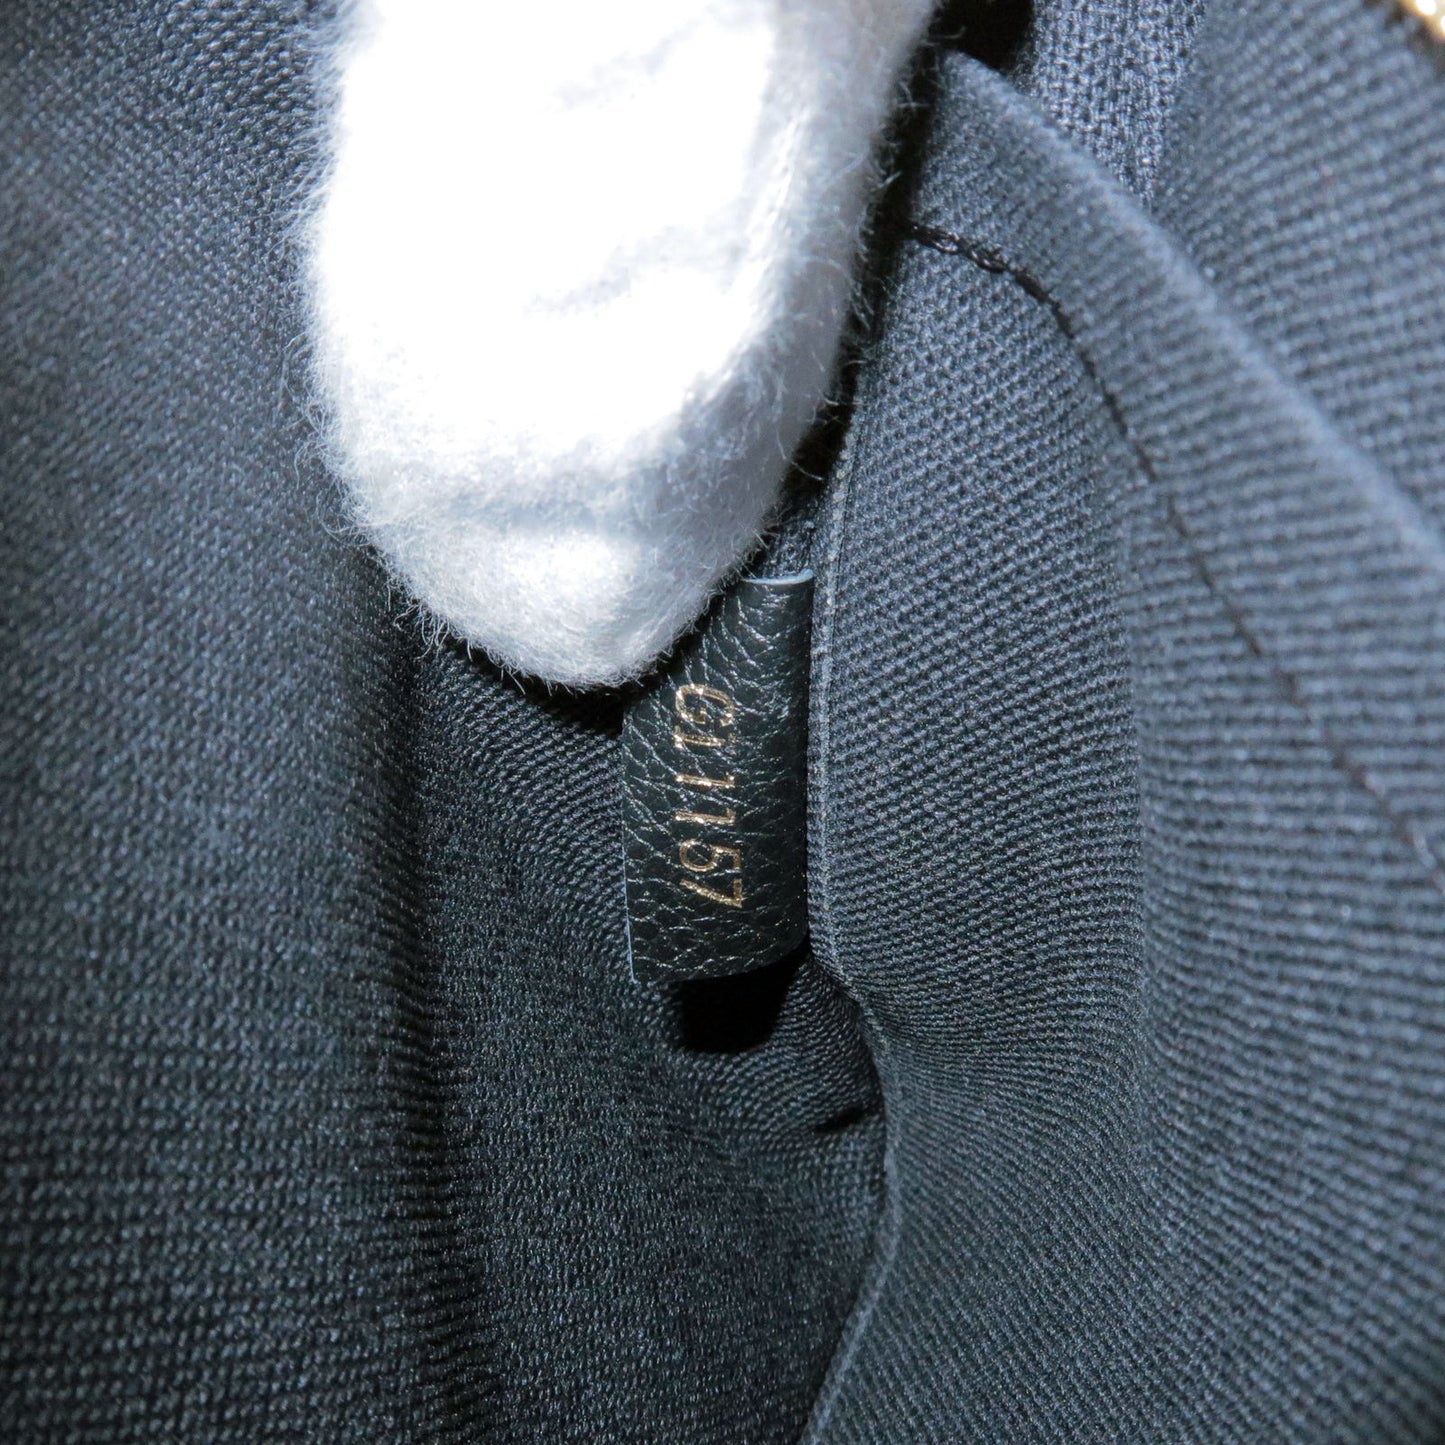 Louis-Vuitton-Monogram-Pallas-Clutch-2-Way-Bag-Noir-M41639 – dct